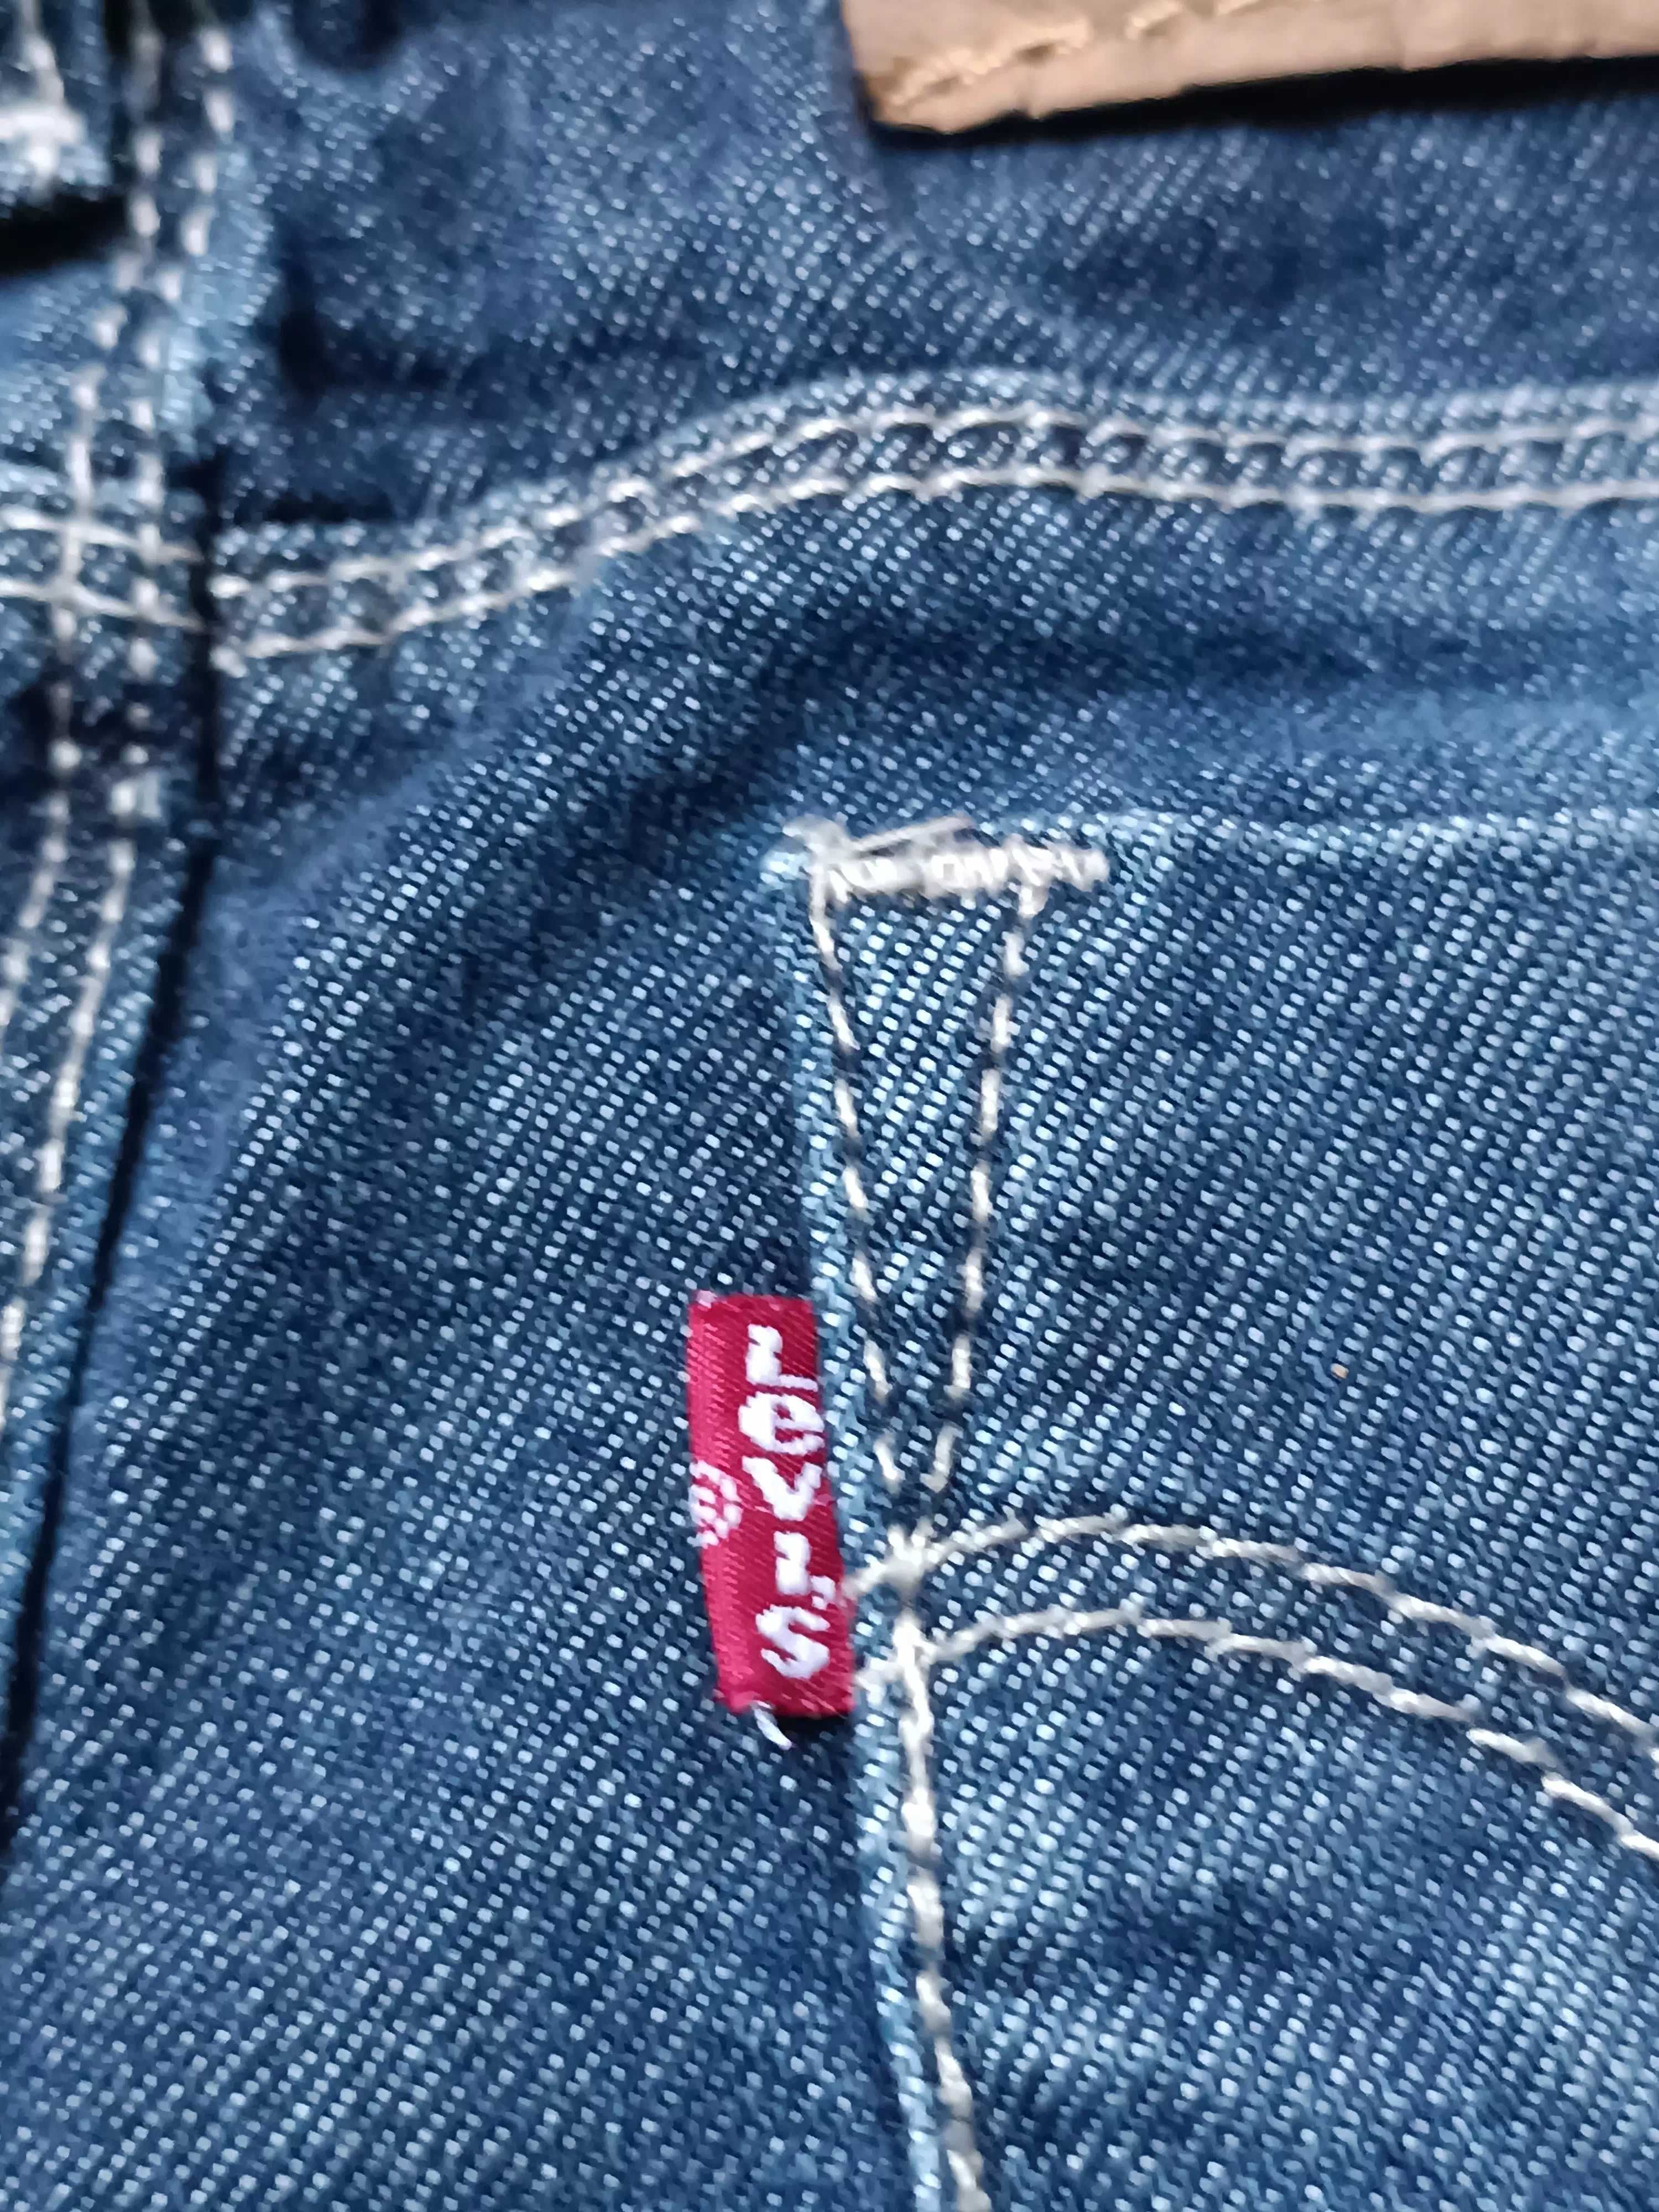 Spódnica miękki jeans regulowany pas kieszonki 'Levi's' Red Tab 80